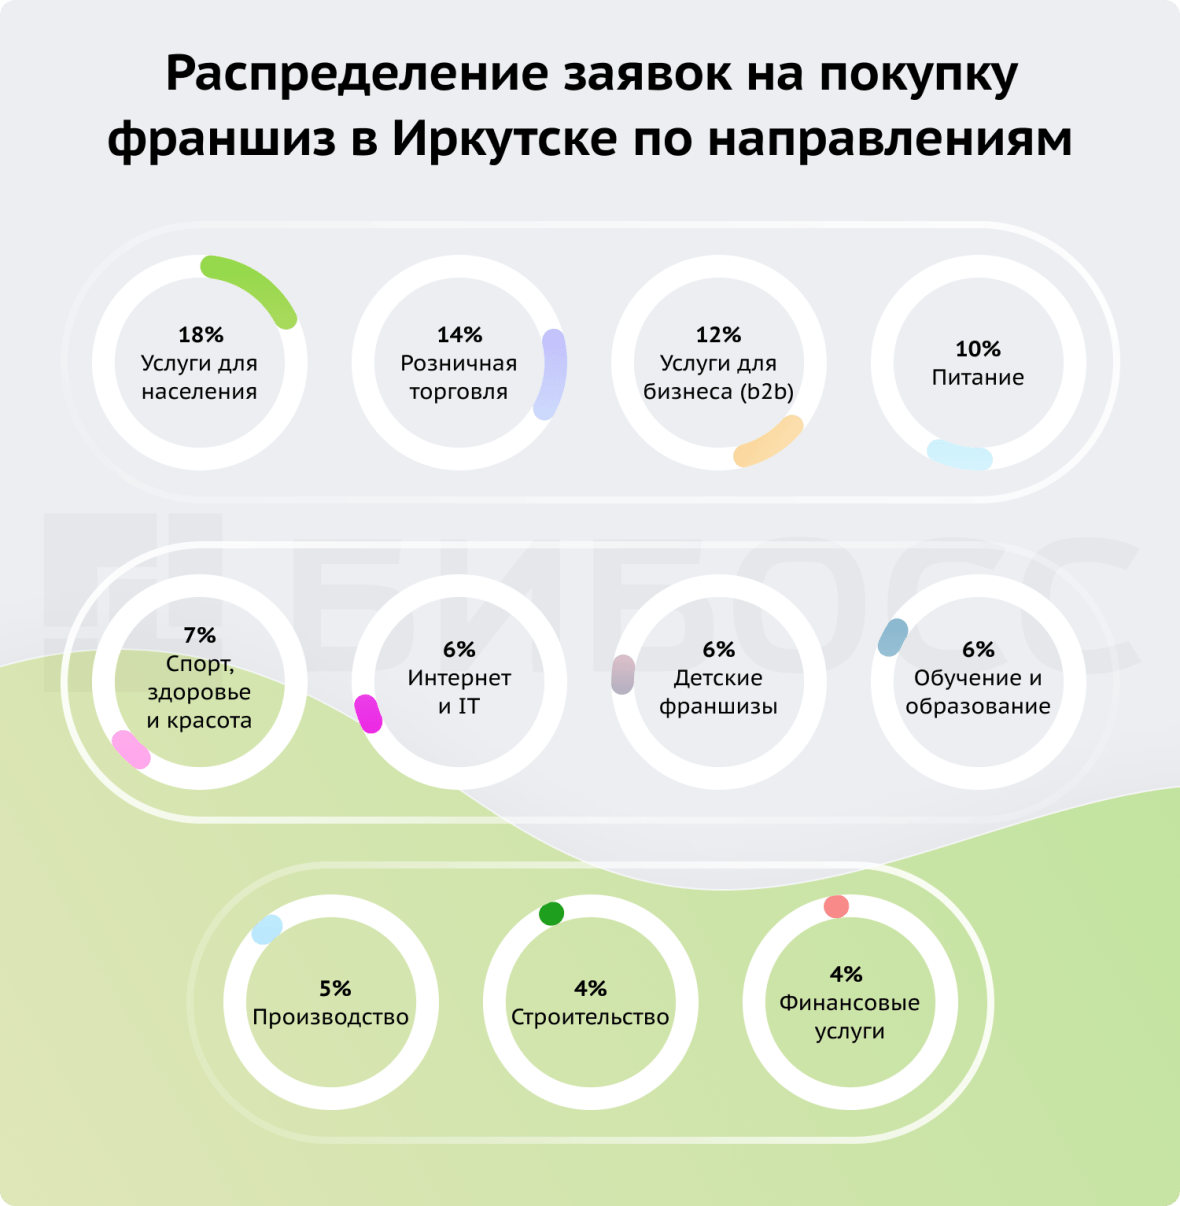 Распределение заявок на покупку франшиз в Иркутске по направлениям